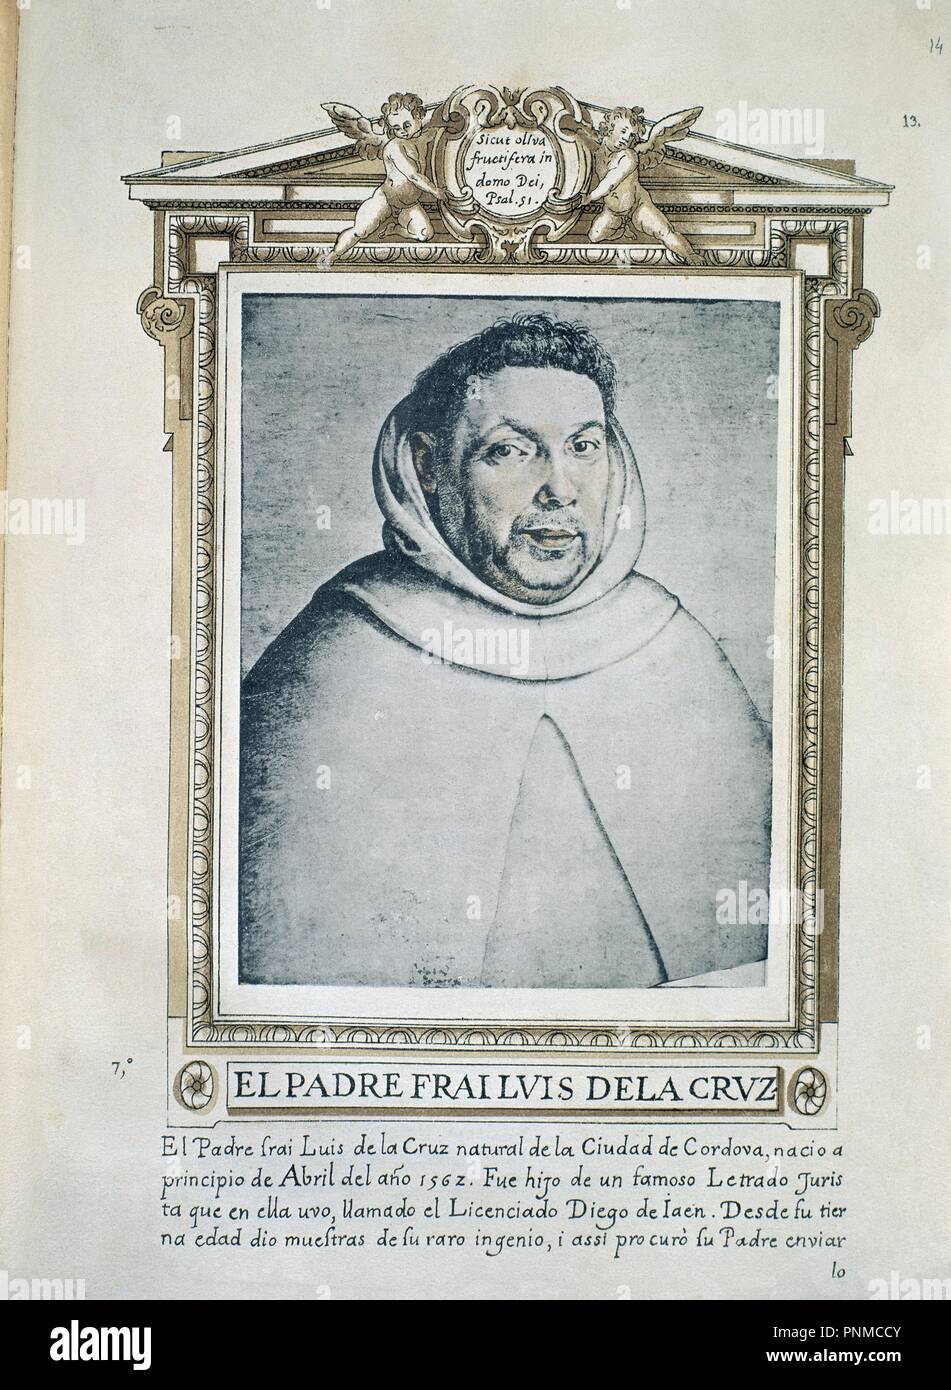 FRAY LUIS DE LA CRUZ - LIBRO DE RETRATOS DE ILUSTRES Y MEMORABLES VARONES - 1599. Author: PACHECO, FRANCISCO. Location: BIBLIOTECA NACIONAL-COLECCION. MADRID. SPAIN. Stock Photo